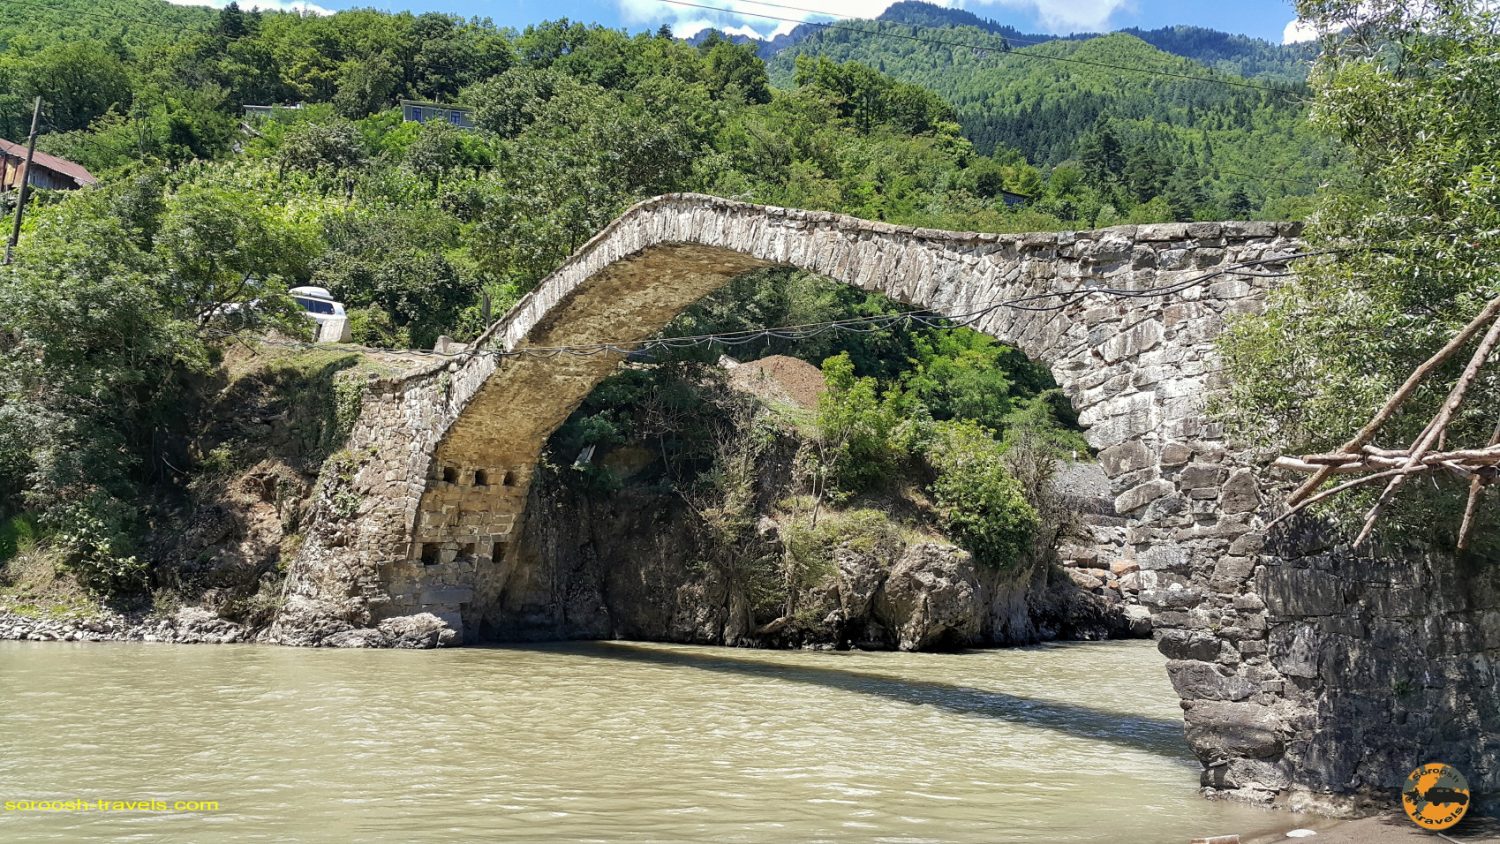 پل داندالو در مسیر باتومی در گرجستان - تابستان 1398 2019